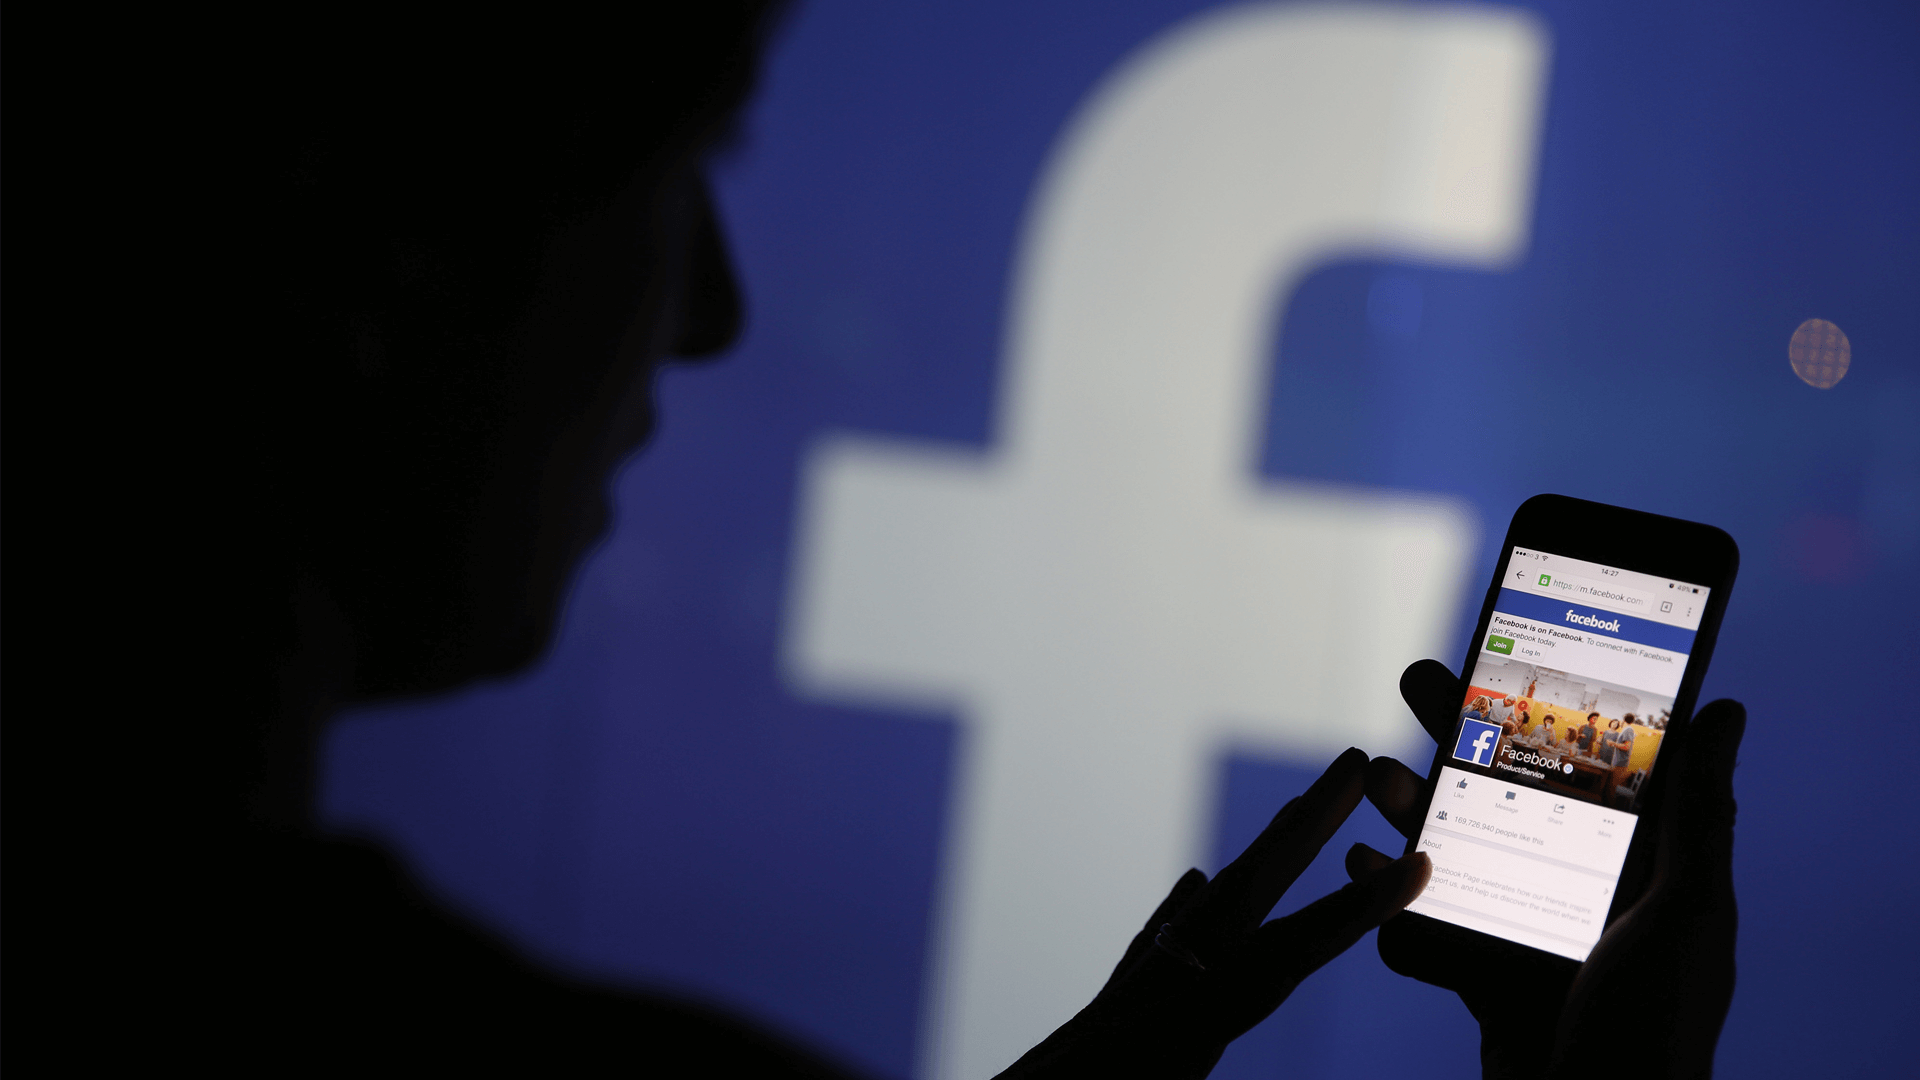 Em conflito com Apple, Facebook divulga faturamento que superam 16 bilhões de dólares.